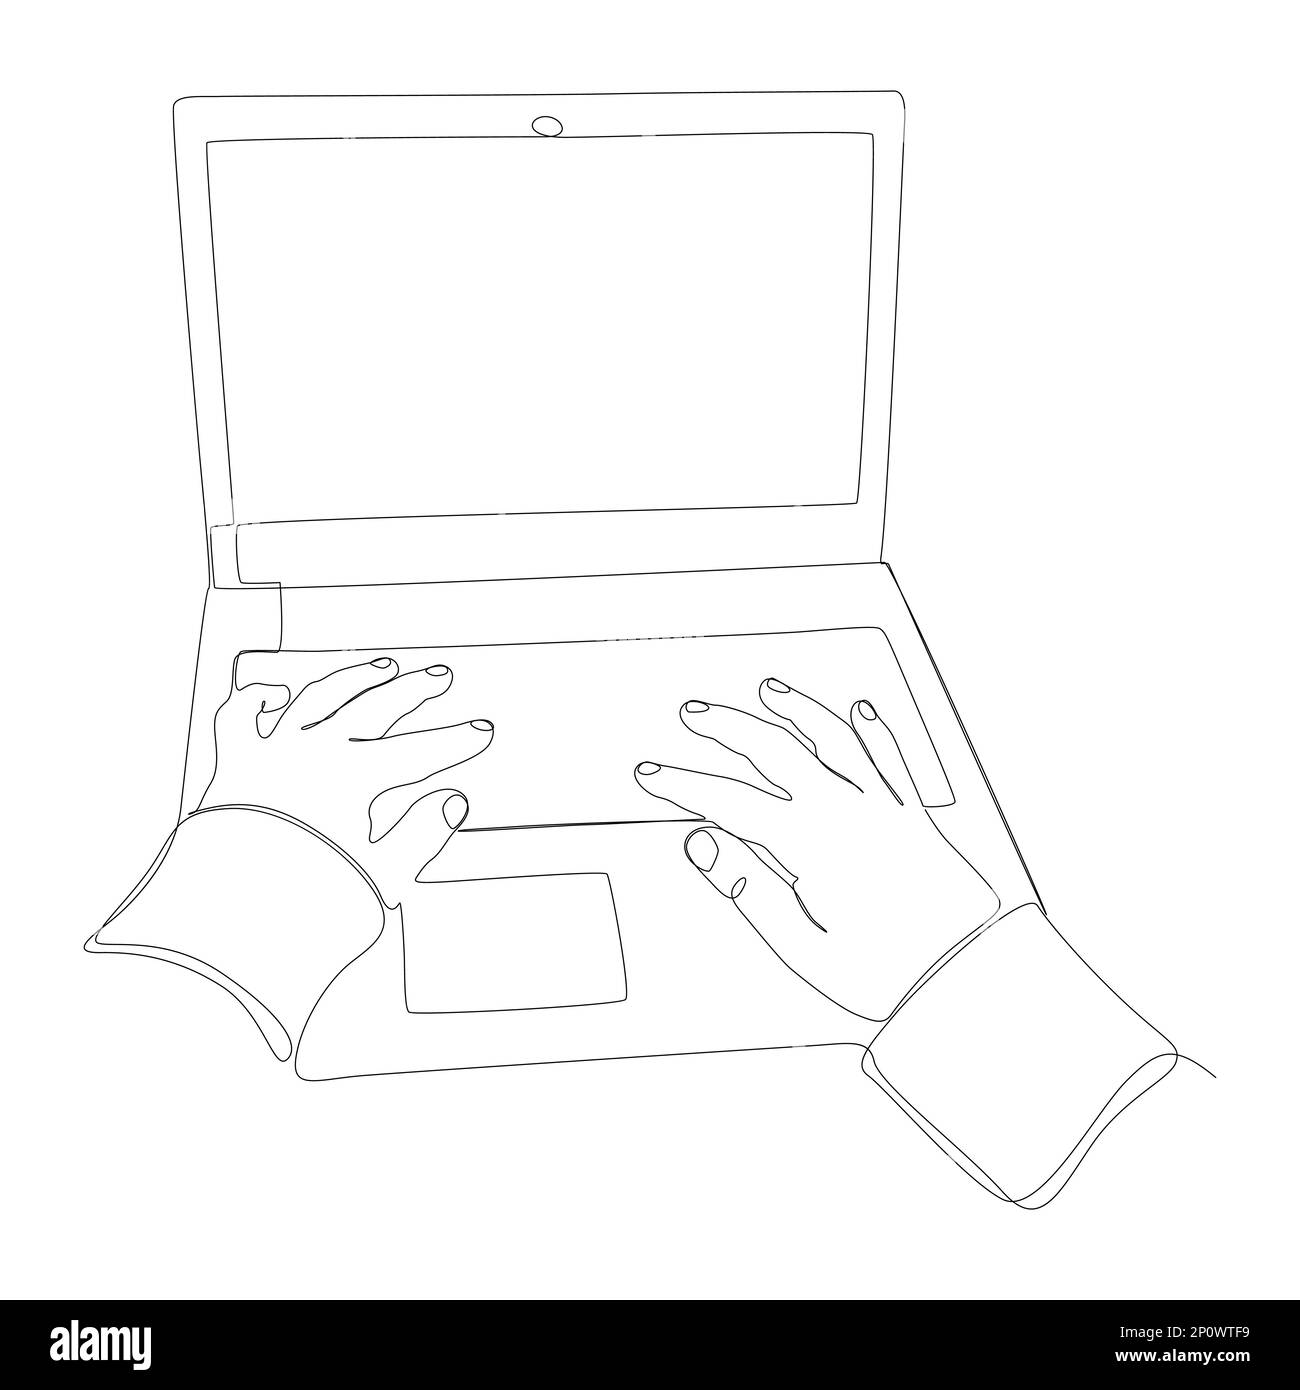 Eine durchgehende Handbewegung mit dem Laptop und der Tastatur. Vektorkonzept zur Darstellung dünner Linien. Kontur Zeichnen kreativer Ideen. Stock Vektor